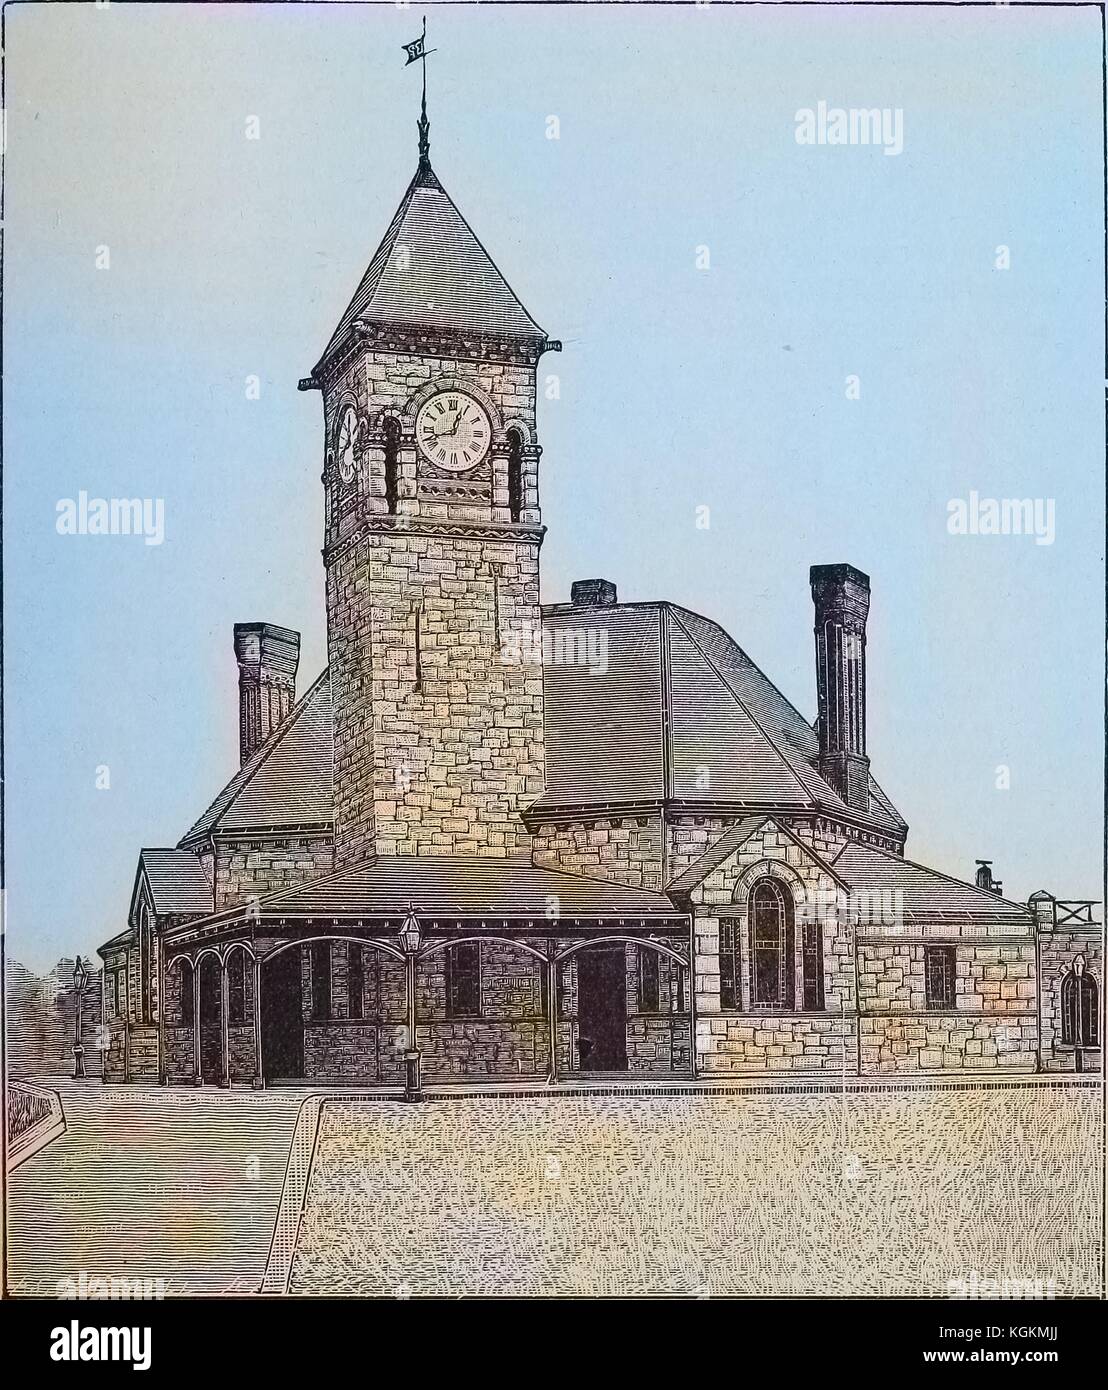 L'image gravée de dedham, une gare avec une tour d'horloge à Dedham, Massachusetts, 1893. courtesy internet archive. Remarque : l'image a été colorisée numériquement à l'aide d'un processus moderne. Les couleurs peuvent ne pas être exacts à l'autre. Banque D'Images